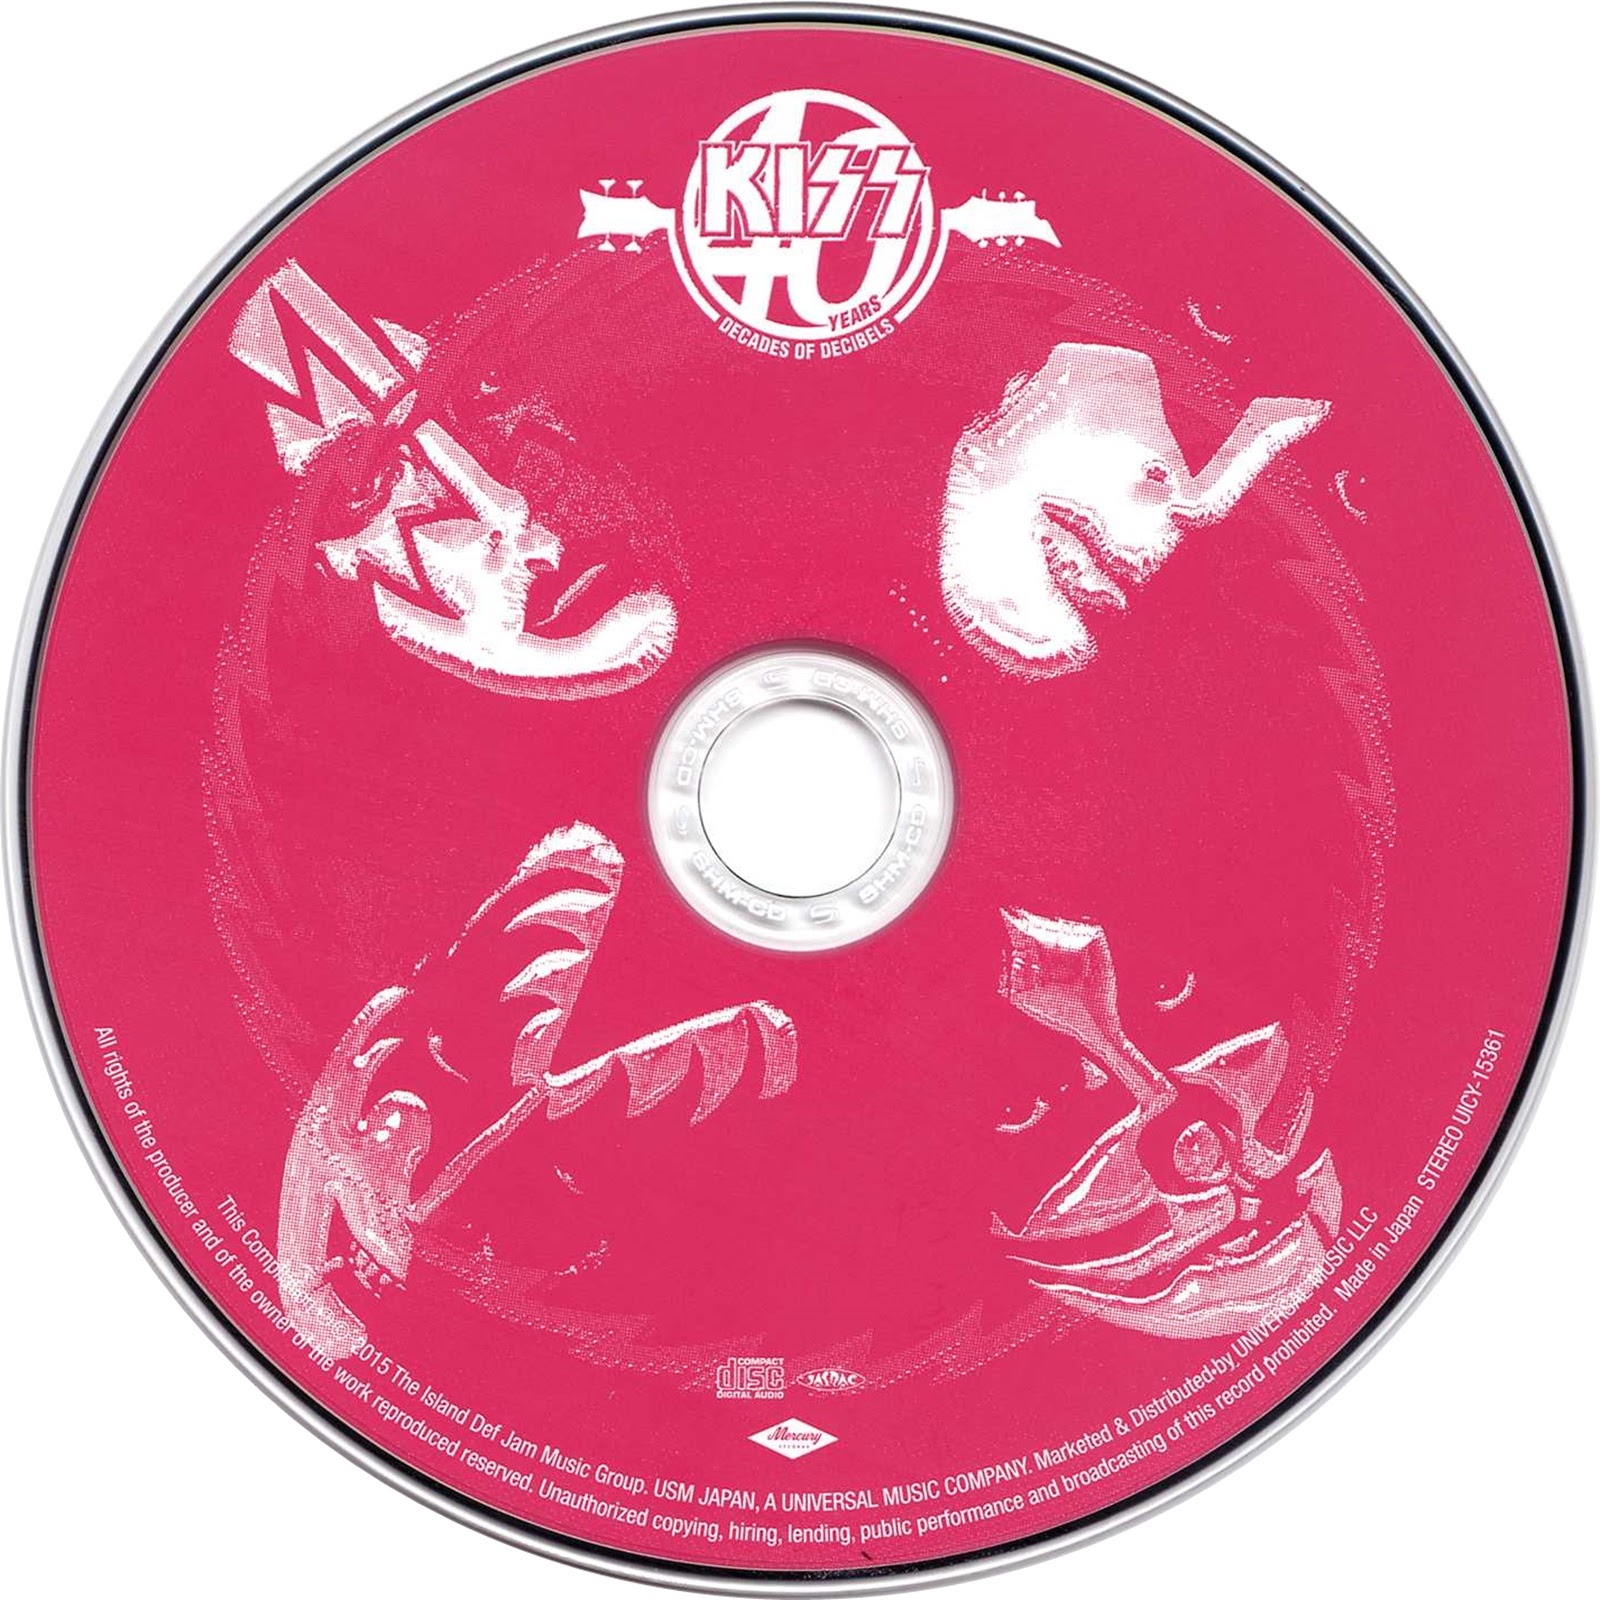 Лейблы альбомы. Kiss "40, CD". Компакт-диск Kiss Kiss. Круг обложка. Классные обложки альбомов.